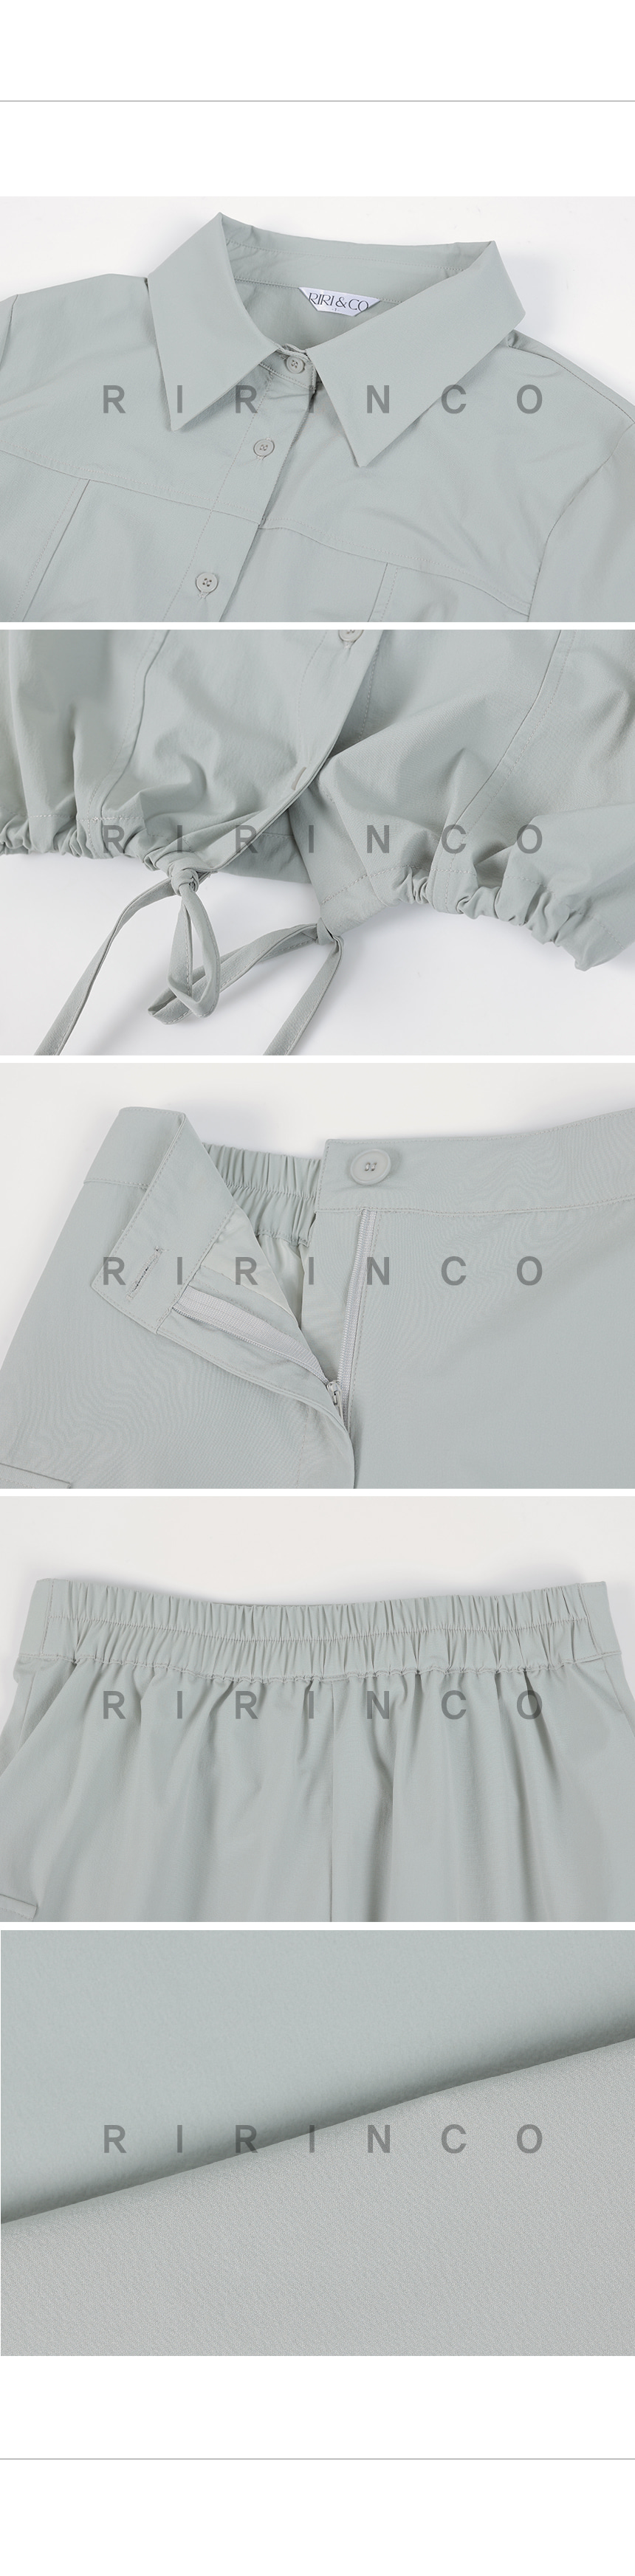 RIRINCO クロップドシャツ&バックゴムカーゴスカート上下セット